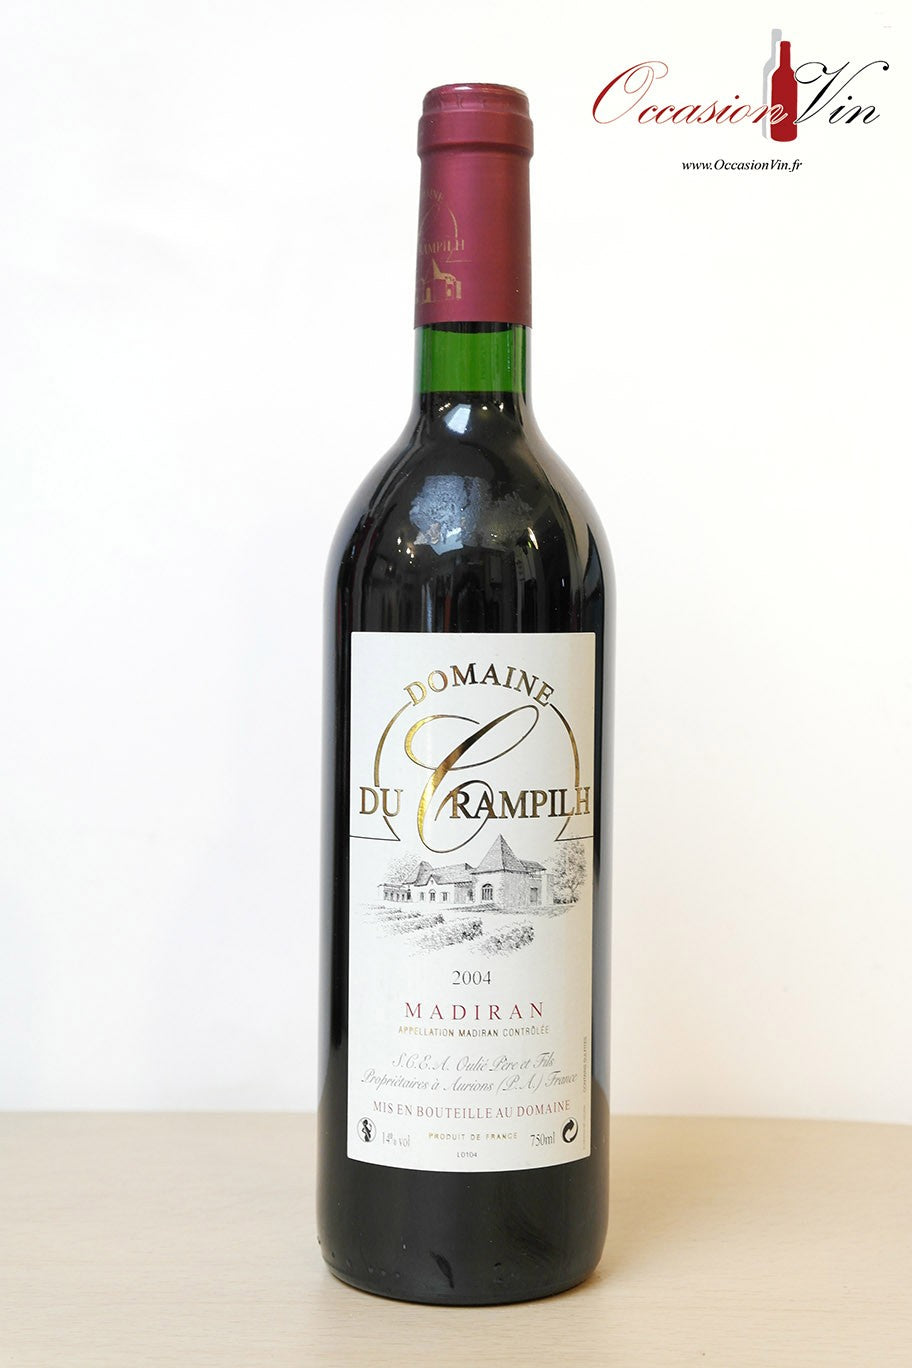 Domaine Crampilh Vin 2004